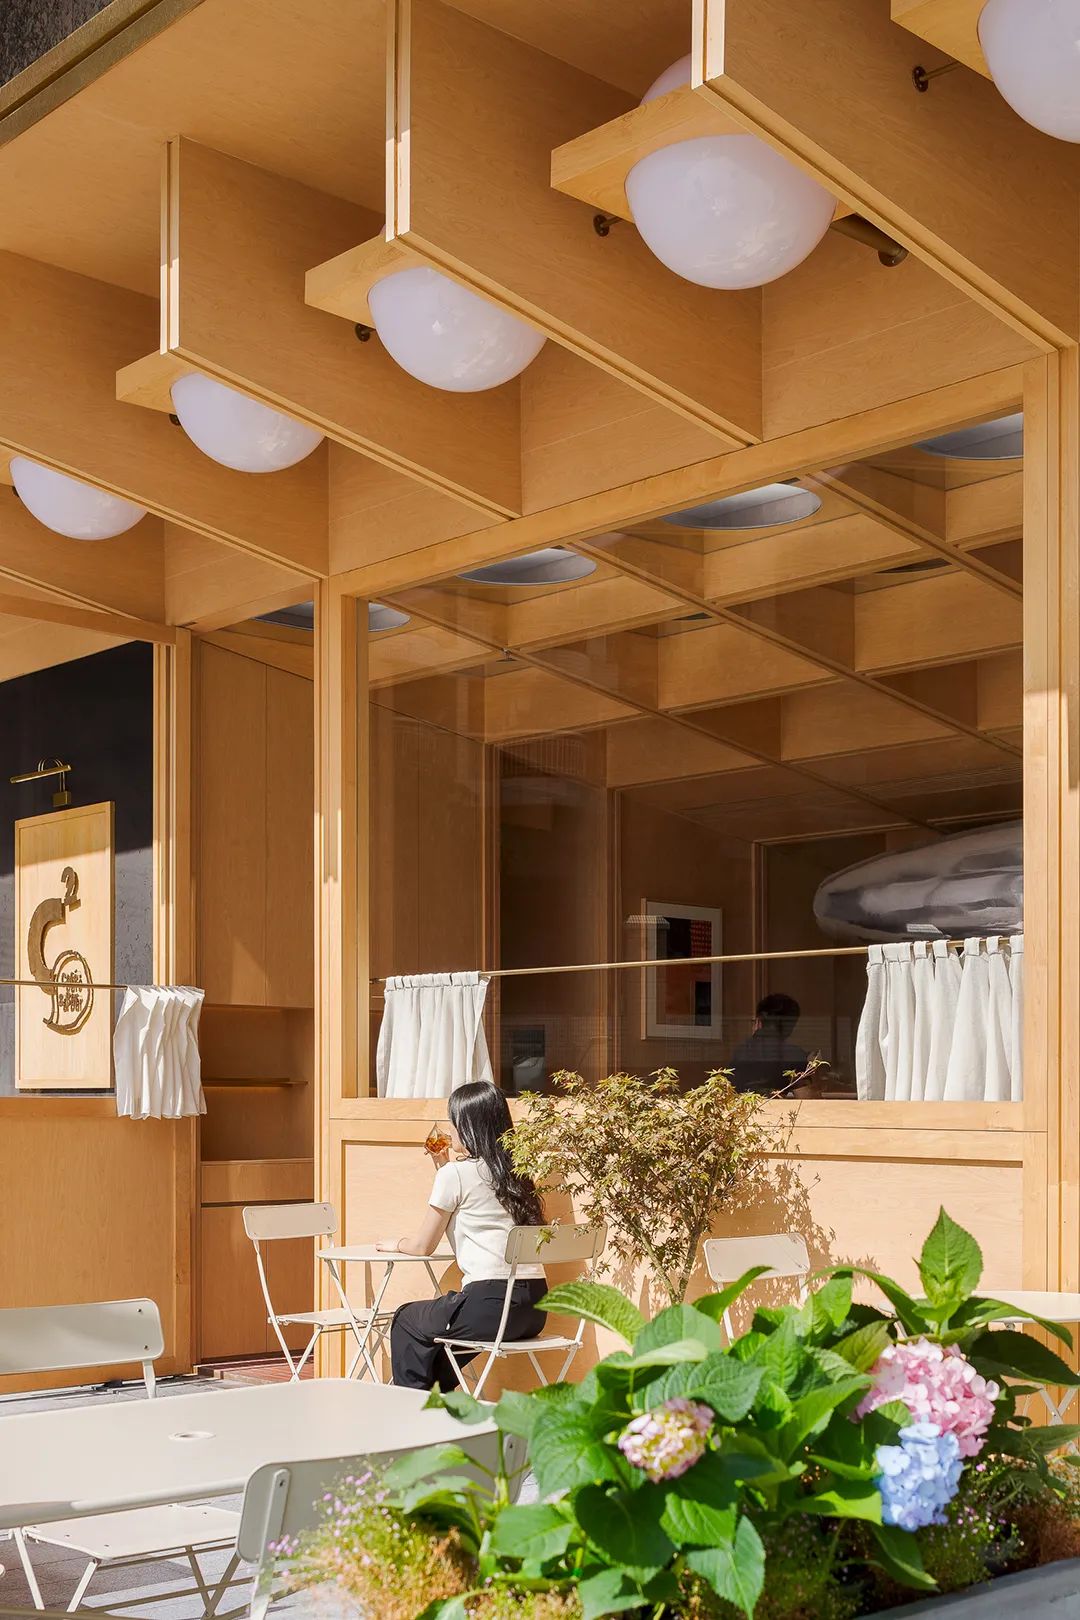 浮廊-Cabin  in City 城市中的小木屋 | 万社设计